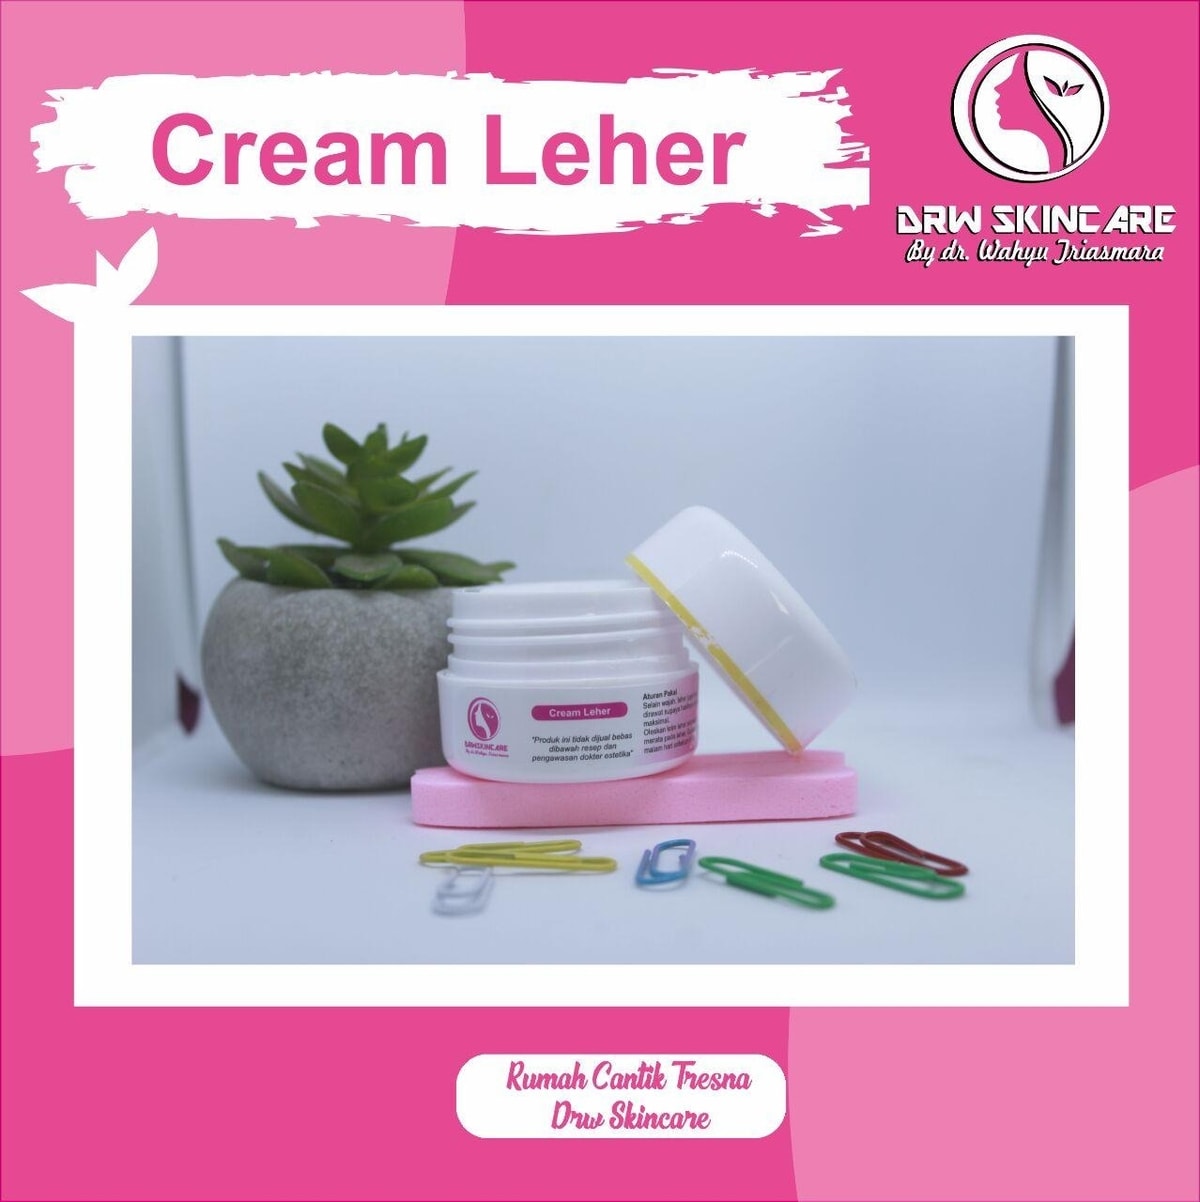 Cream Leher Drw Skincare